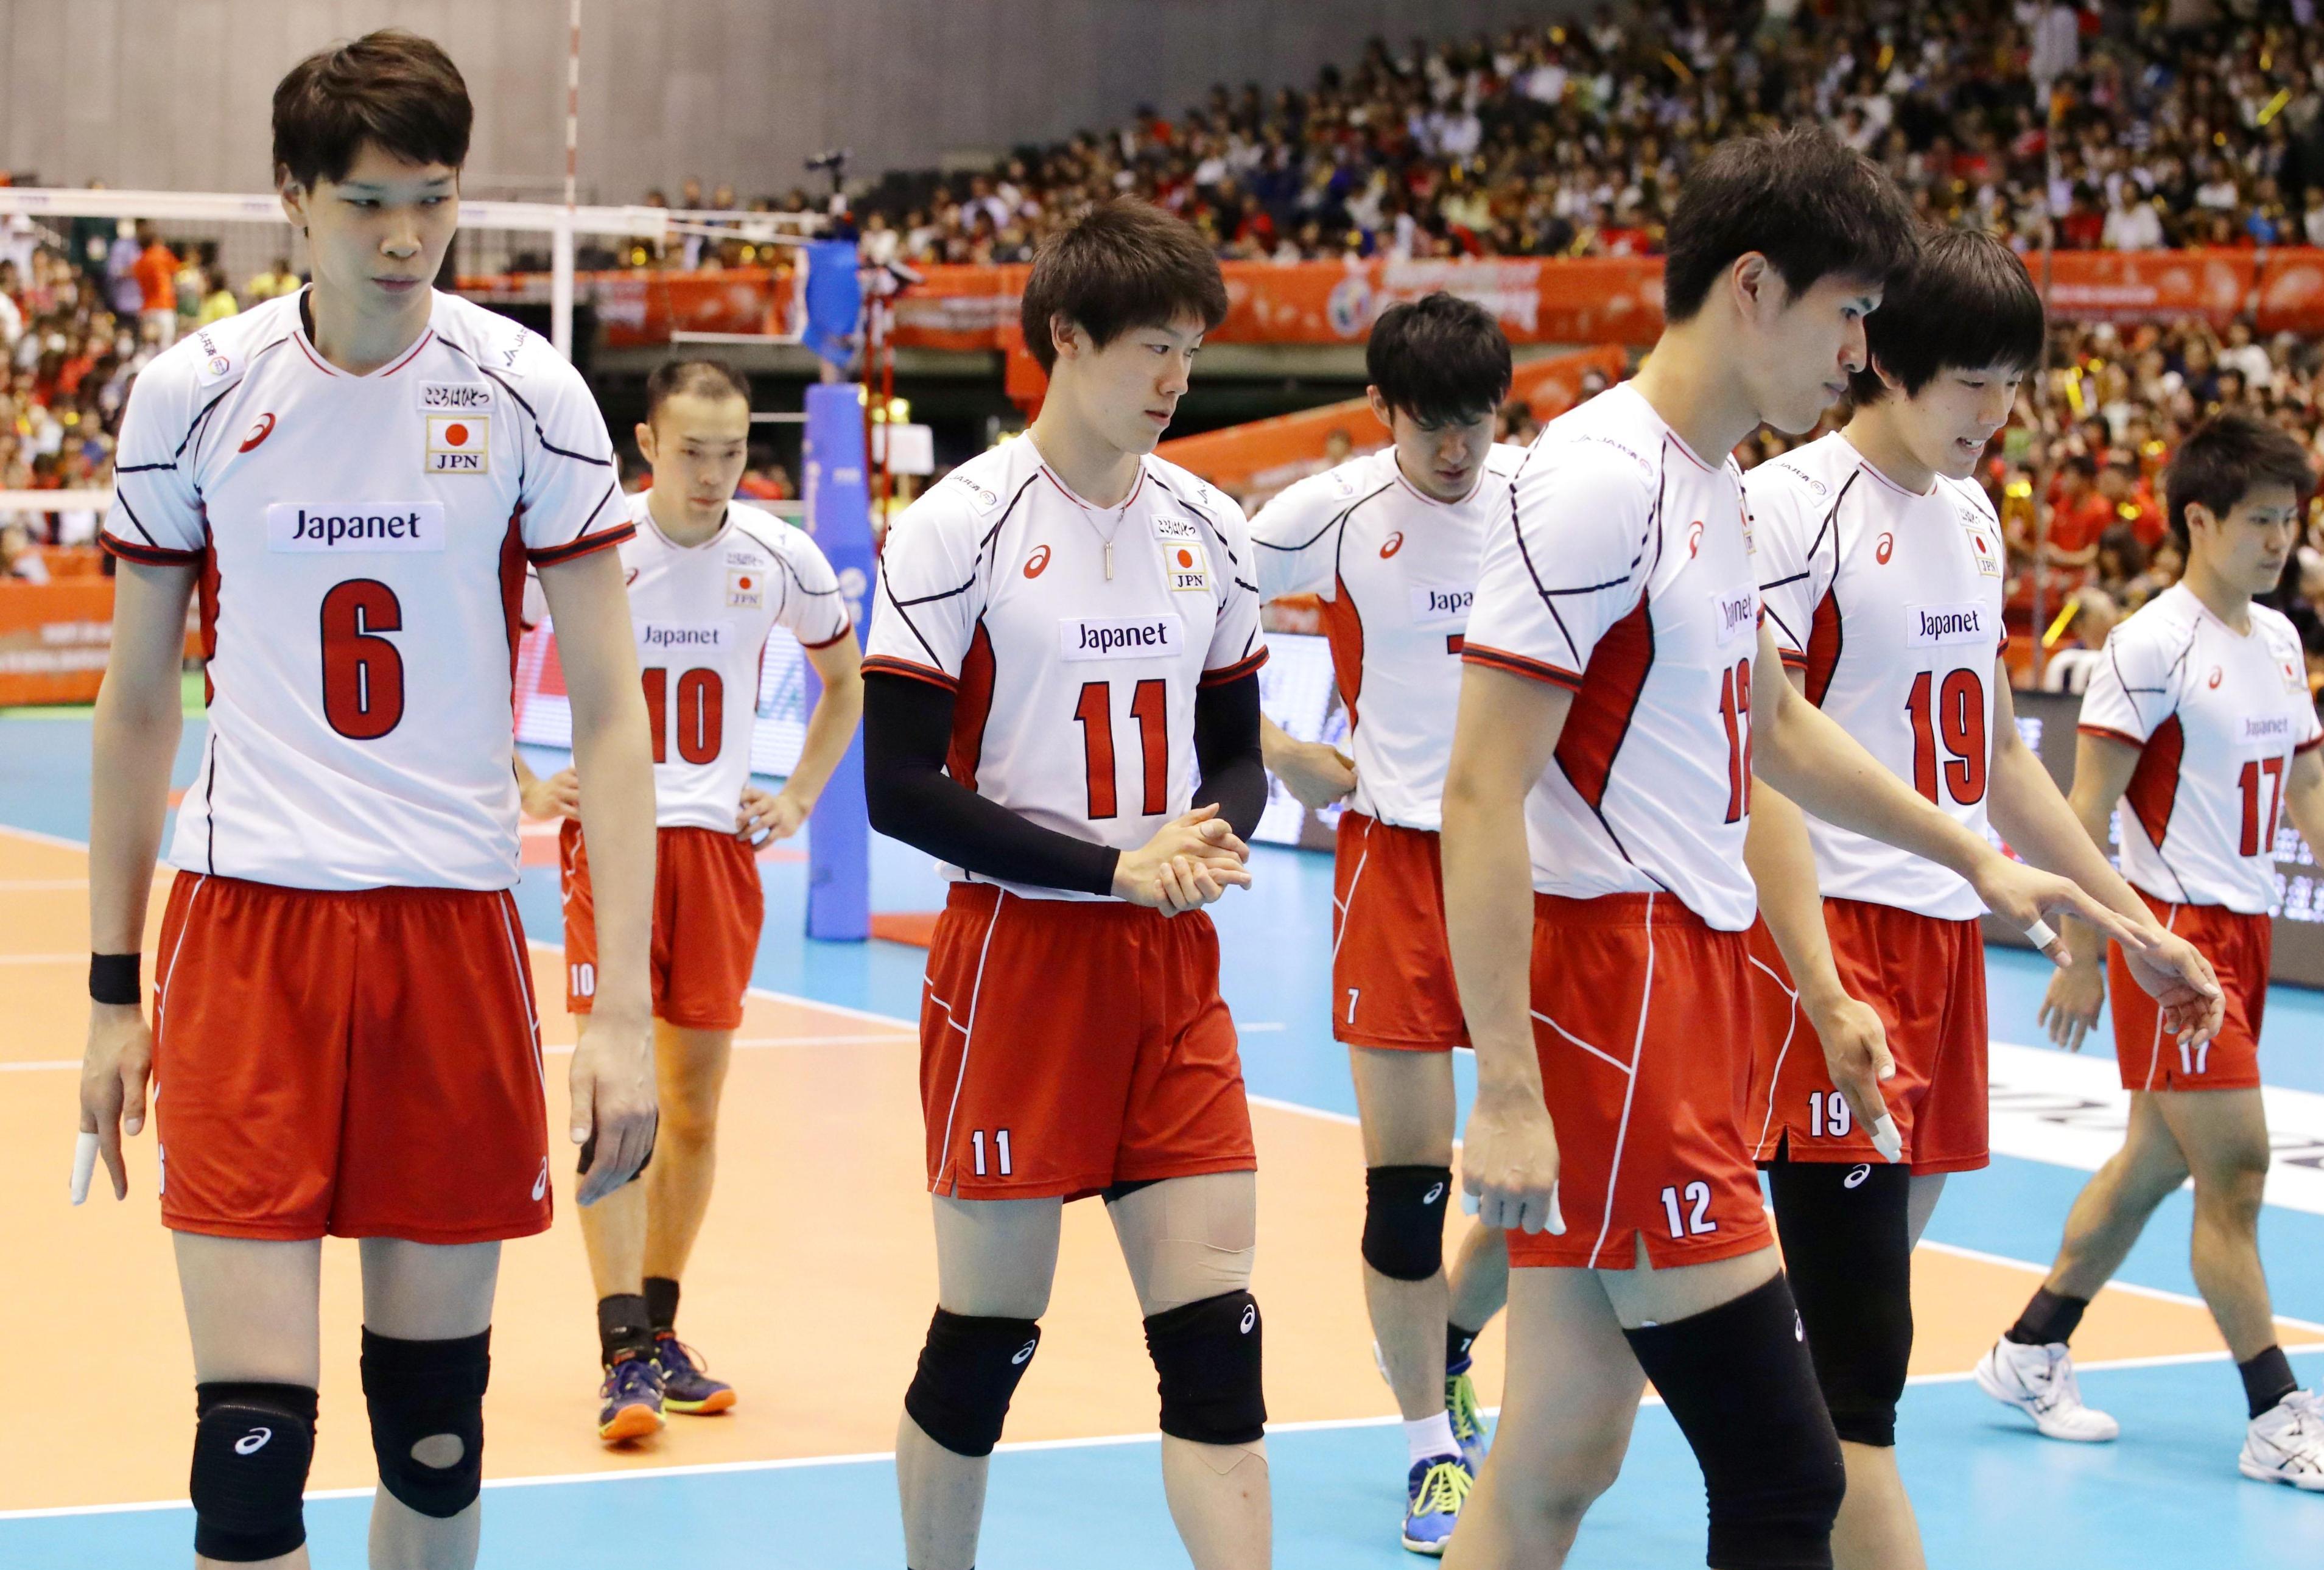 Япония волейбол мужчины. Волейбольная команда Японии мужская сборная. Сборная Японии по волейболу мужская. Либеро сборной Японии по волейболу мужчины. Сборная Японии по волейболу мужская рост 2022.